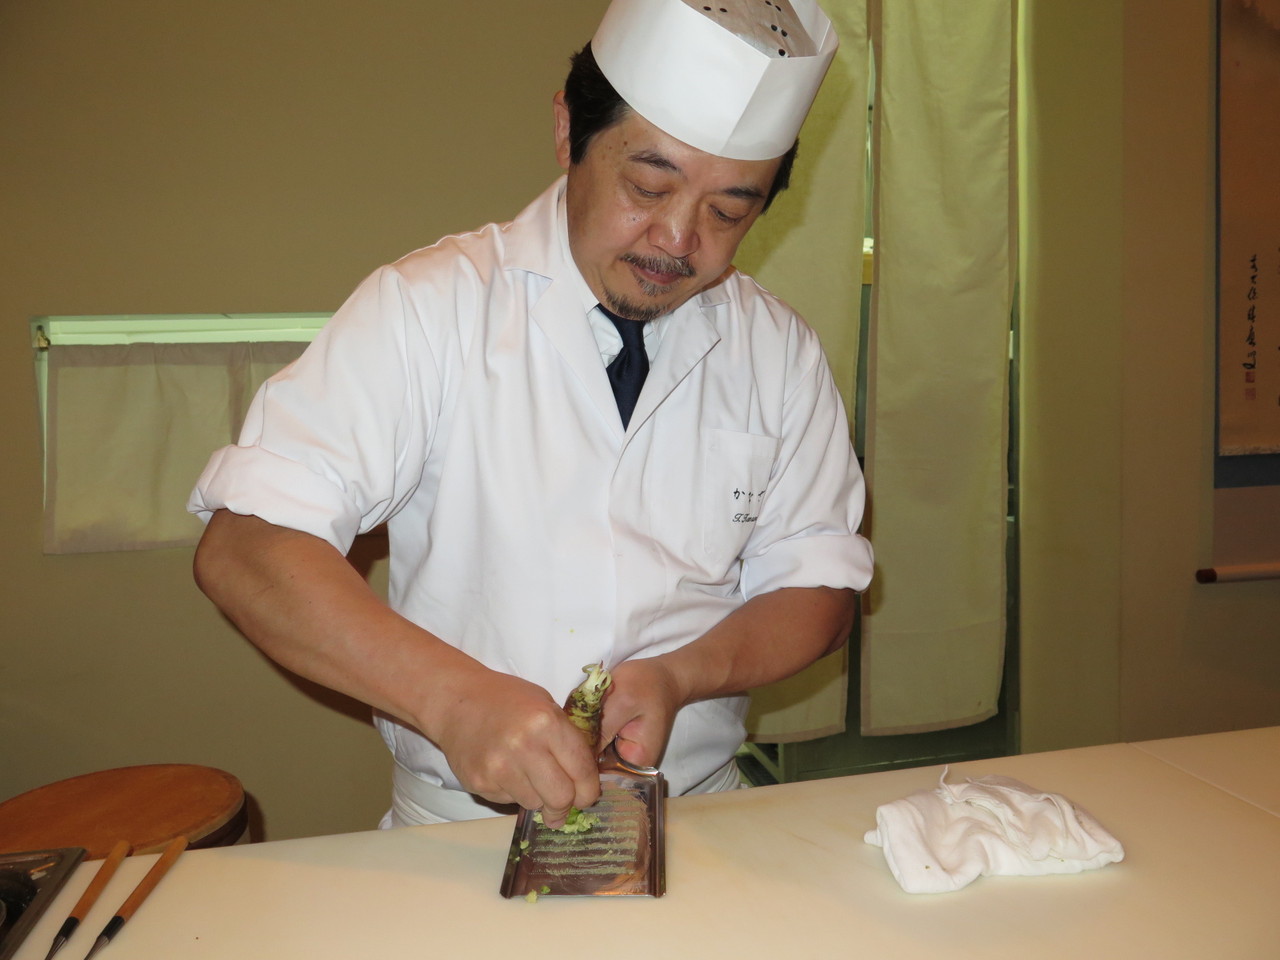 Tomoaki Kanazawa e a raiz da planta Wasabia Japonica